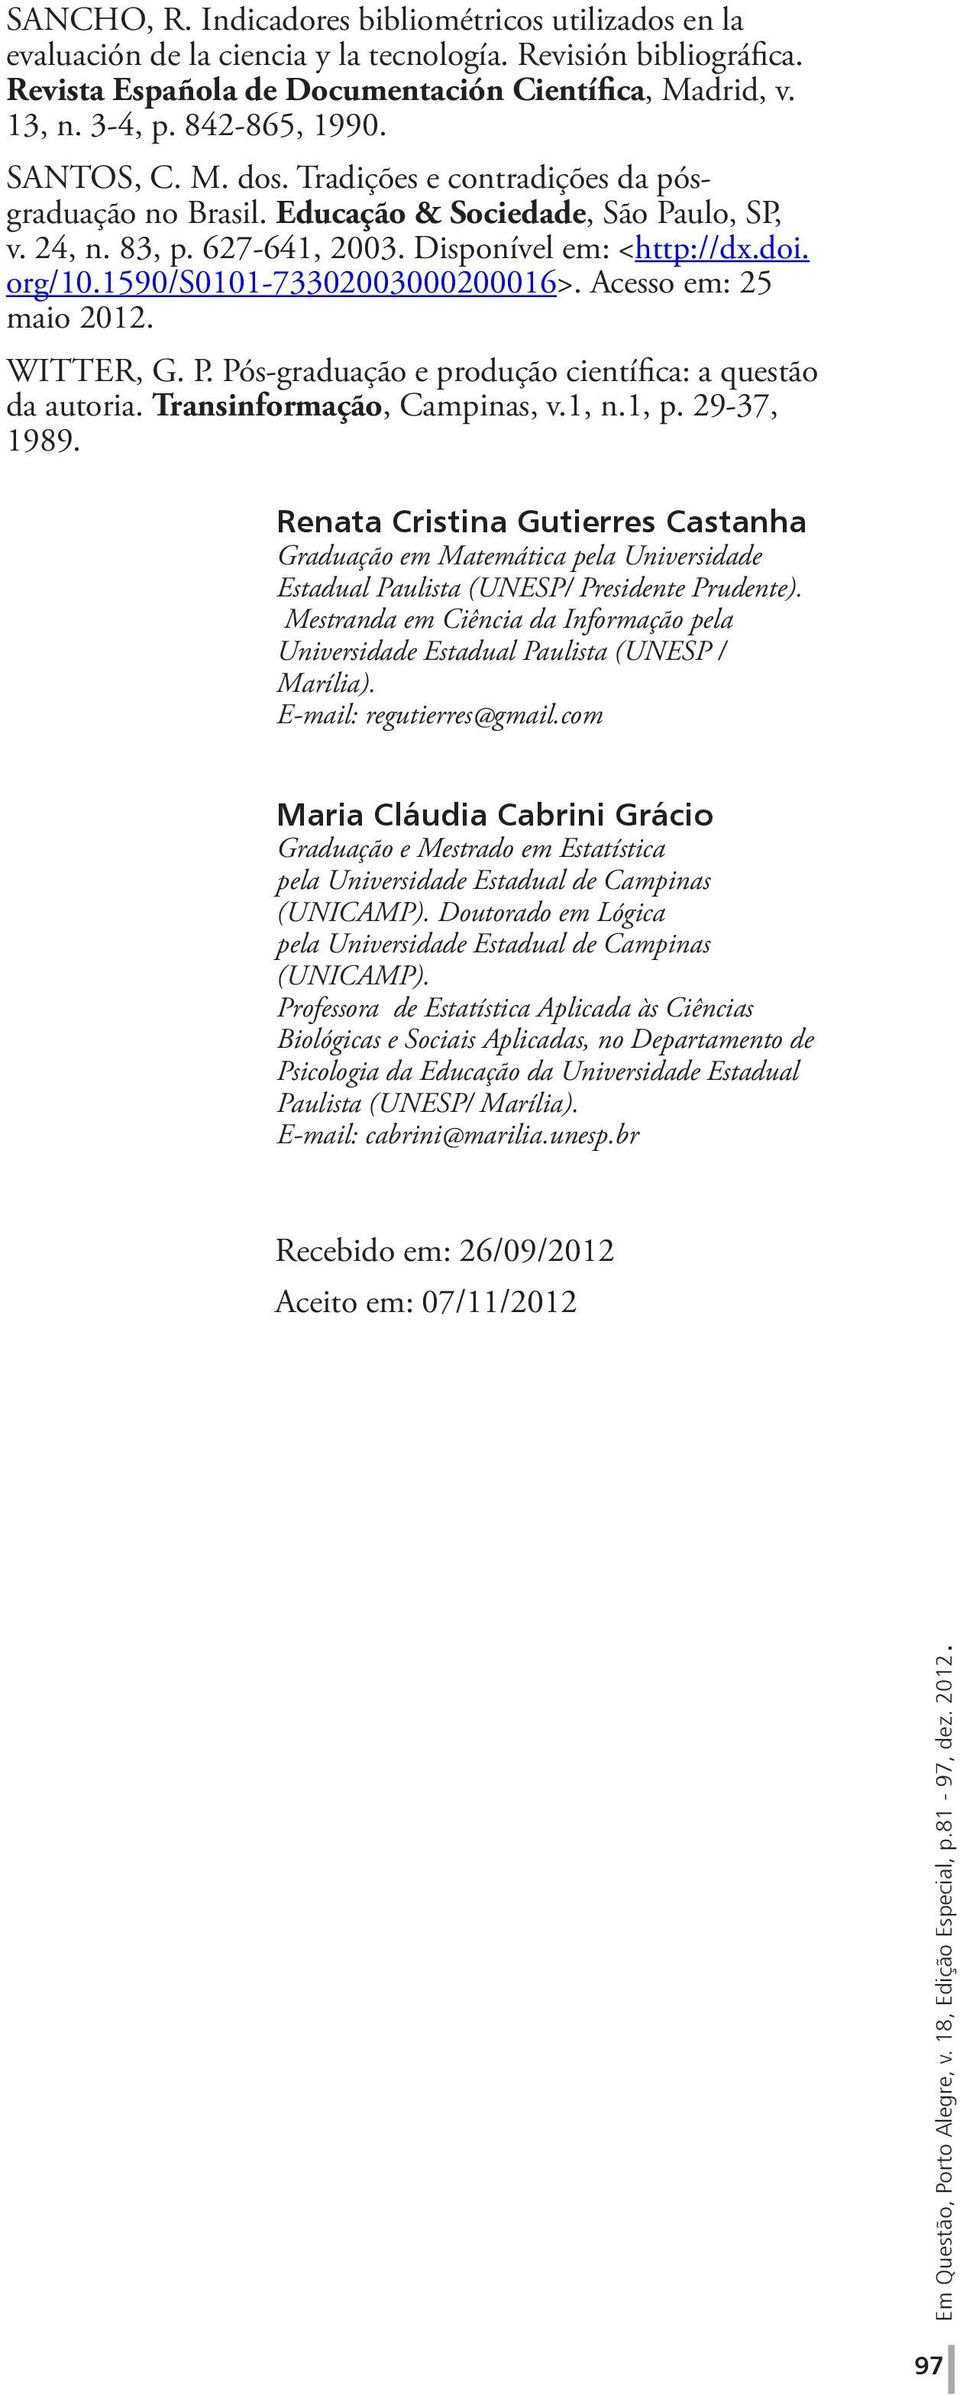 1590/s0101-73302003000200016>. Acesso em: 25 maio 2012. WITTER, G. P. Pós-graduação e produção científica: a questão da autoria. Transinformação, Campinas, v.1, n.1, p. 29-37, 1989.